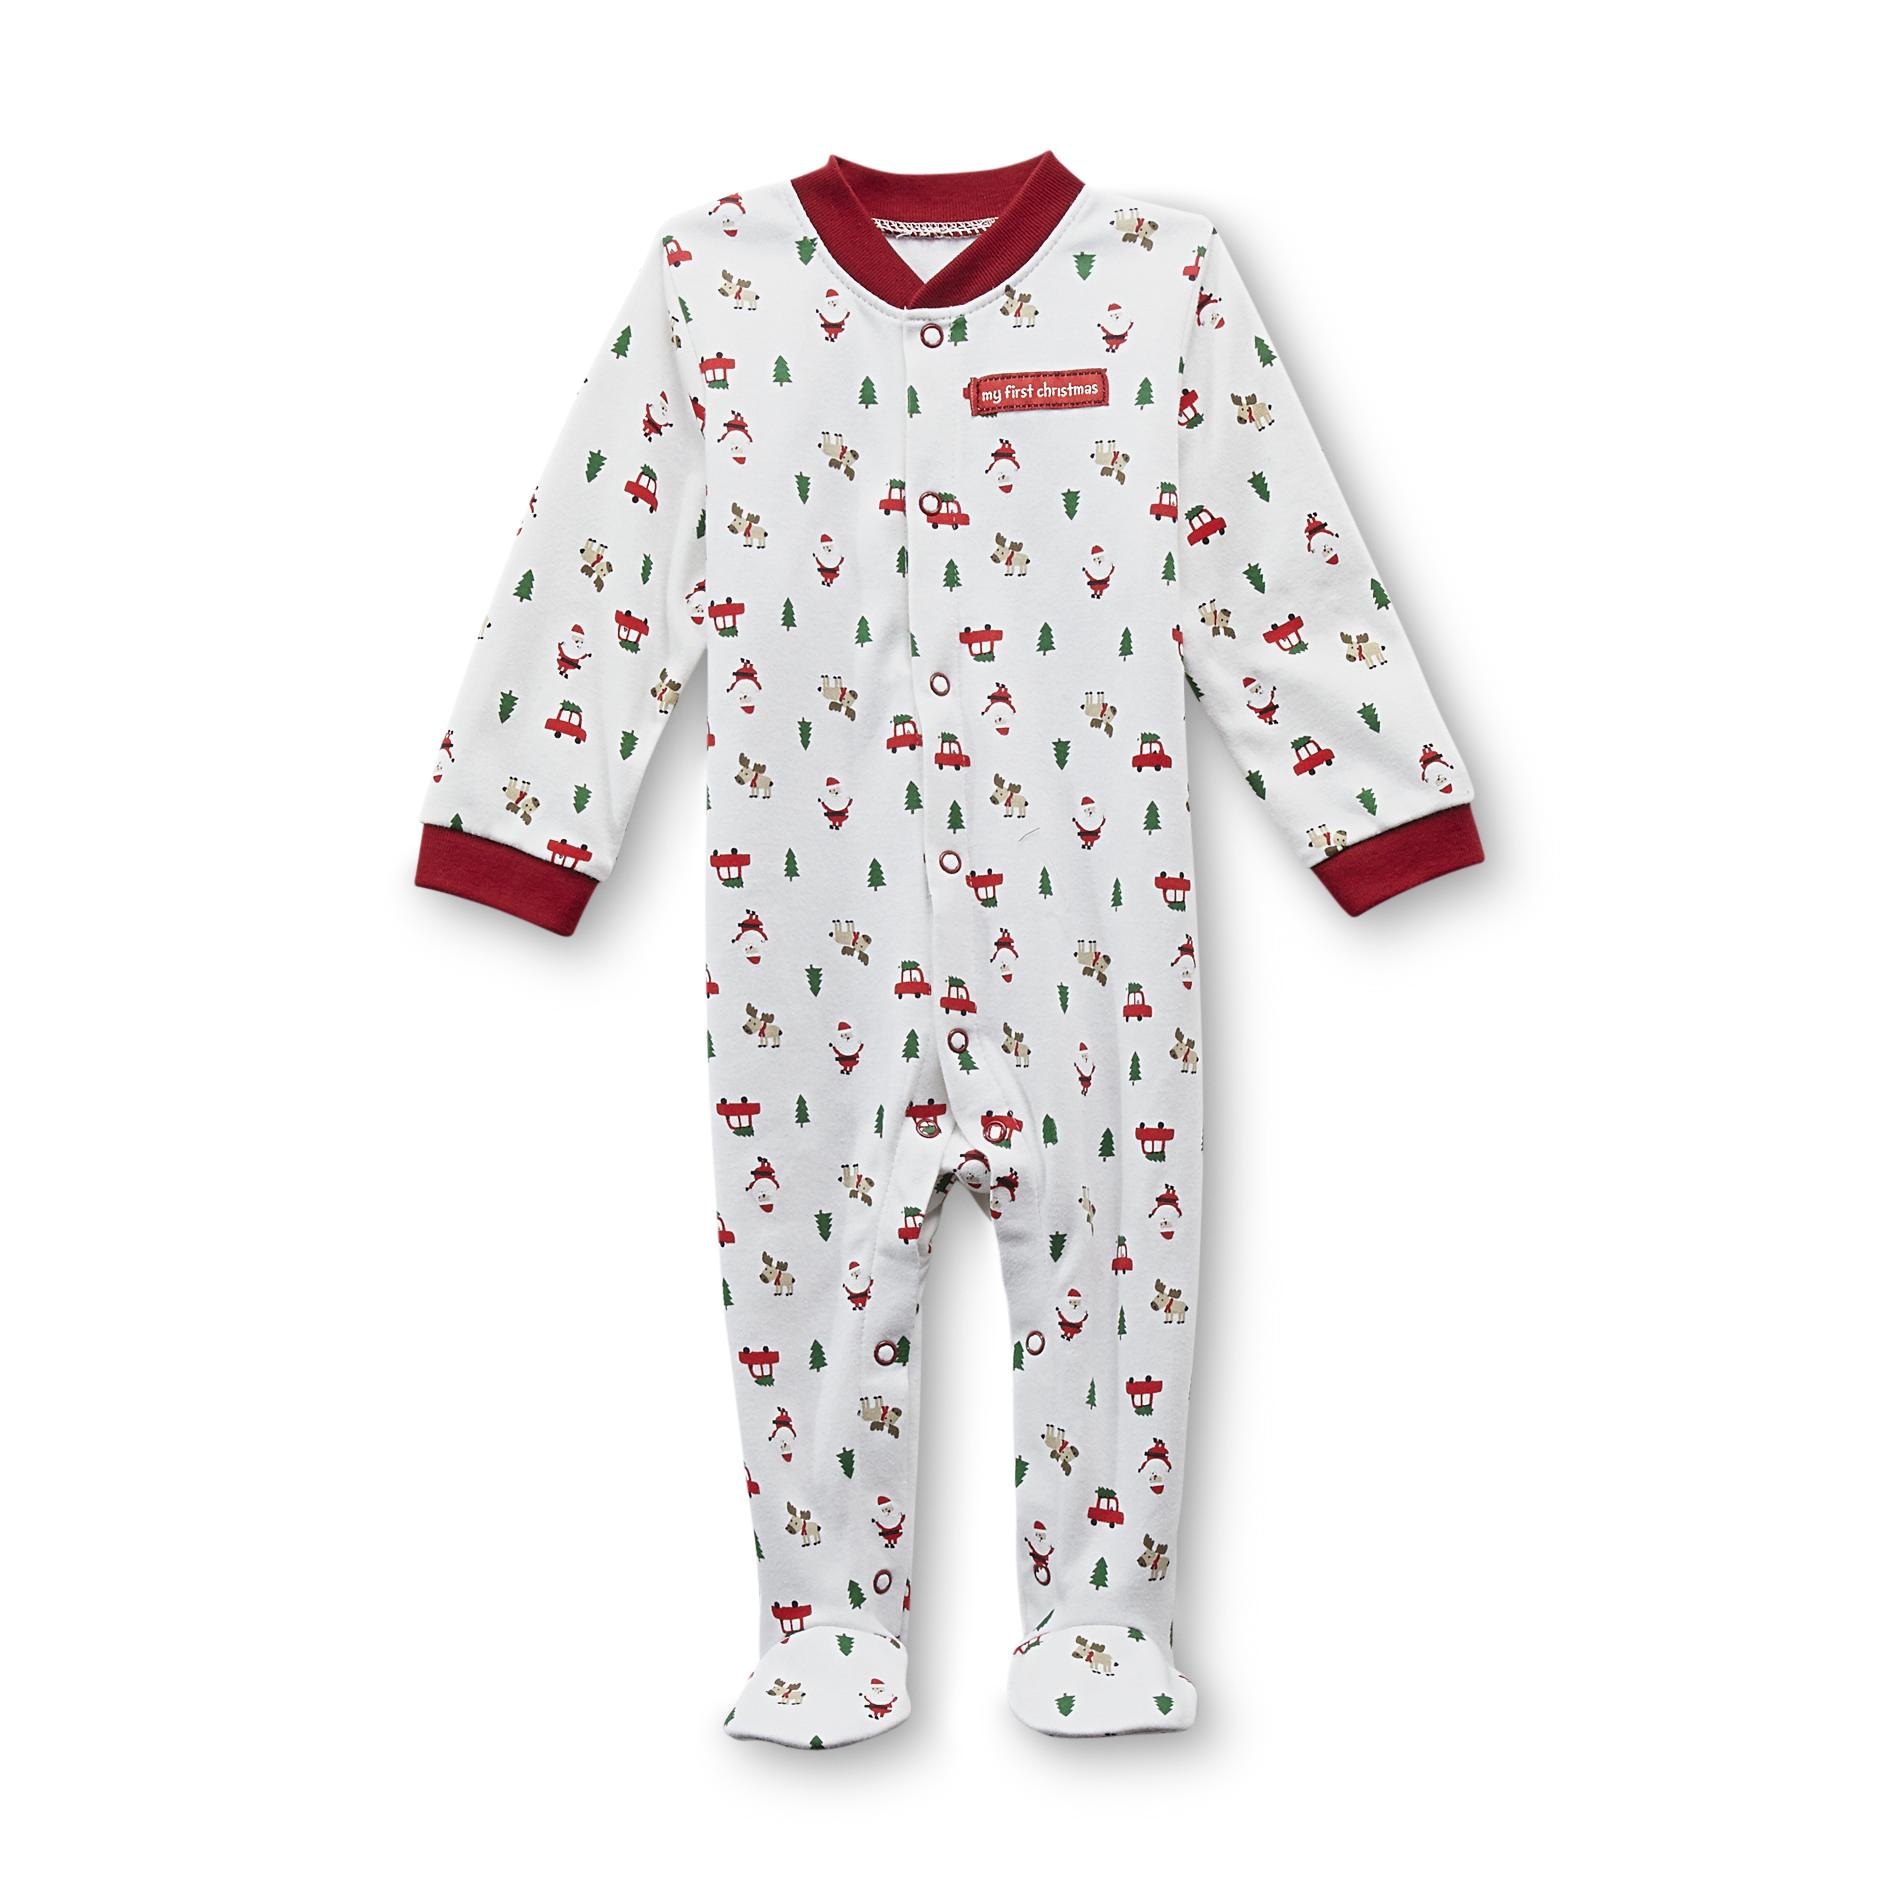 Small Wonders Newborn Sleeper Pajamas - First Christmas